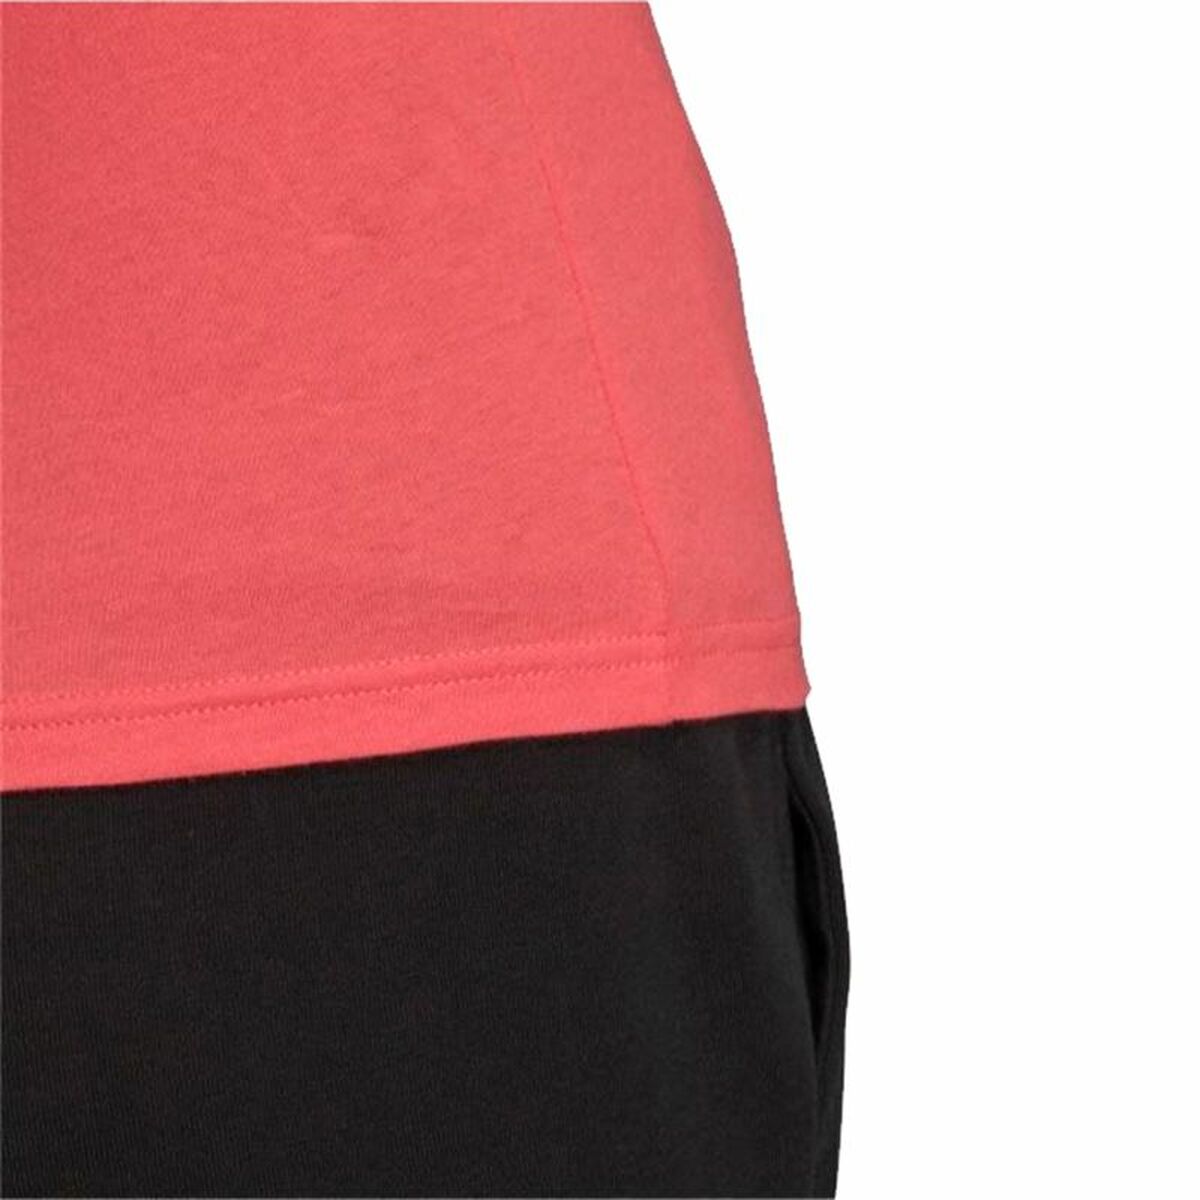 Women’s Short Sleeve T-Shirt Adidas Essentials Light Pink